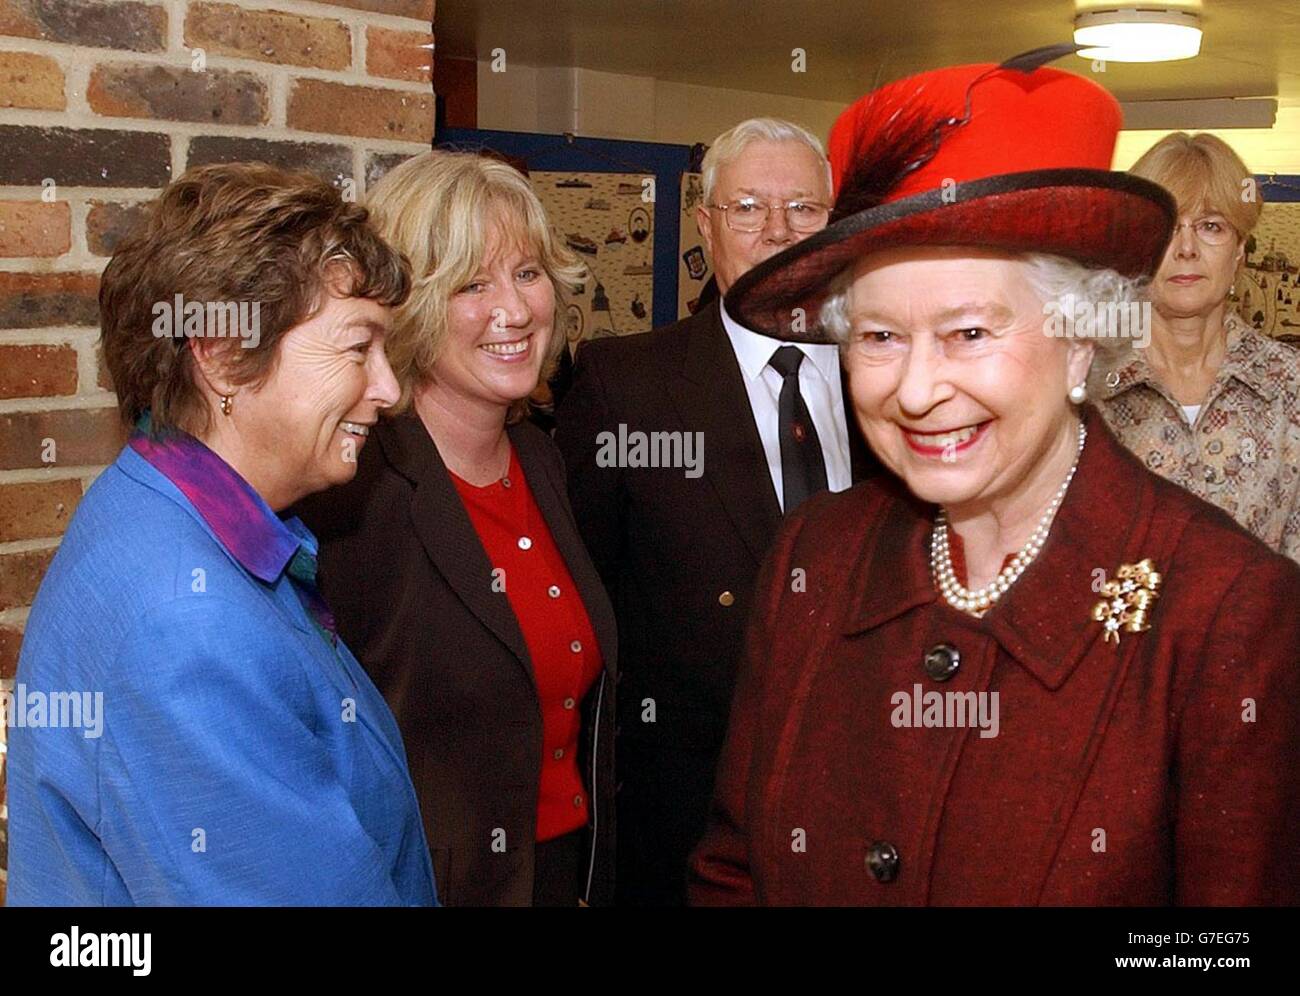 La regina sorride mentre si allontana da Jacky Froggatt (a sinistra) la direttrice della Harwich School, ad Harwich, Essex. Foto Stock